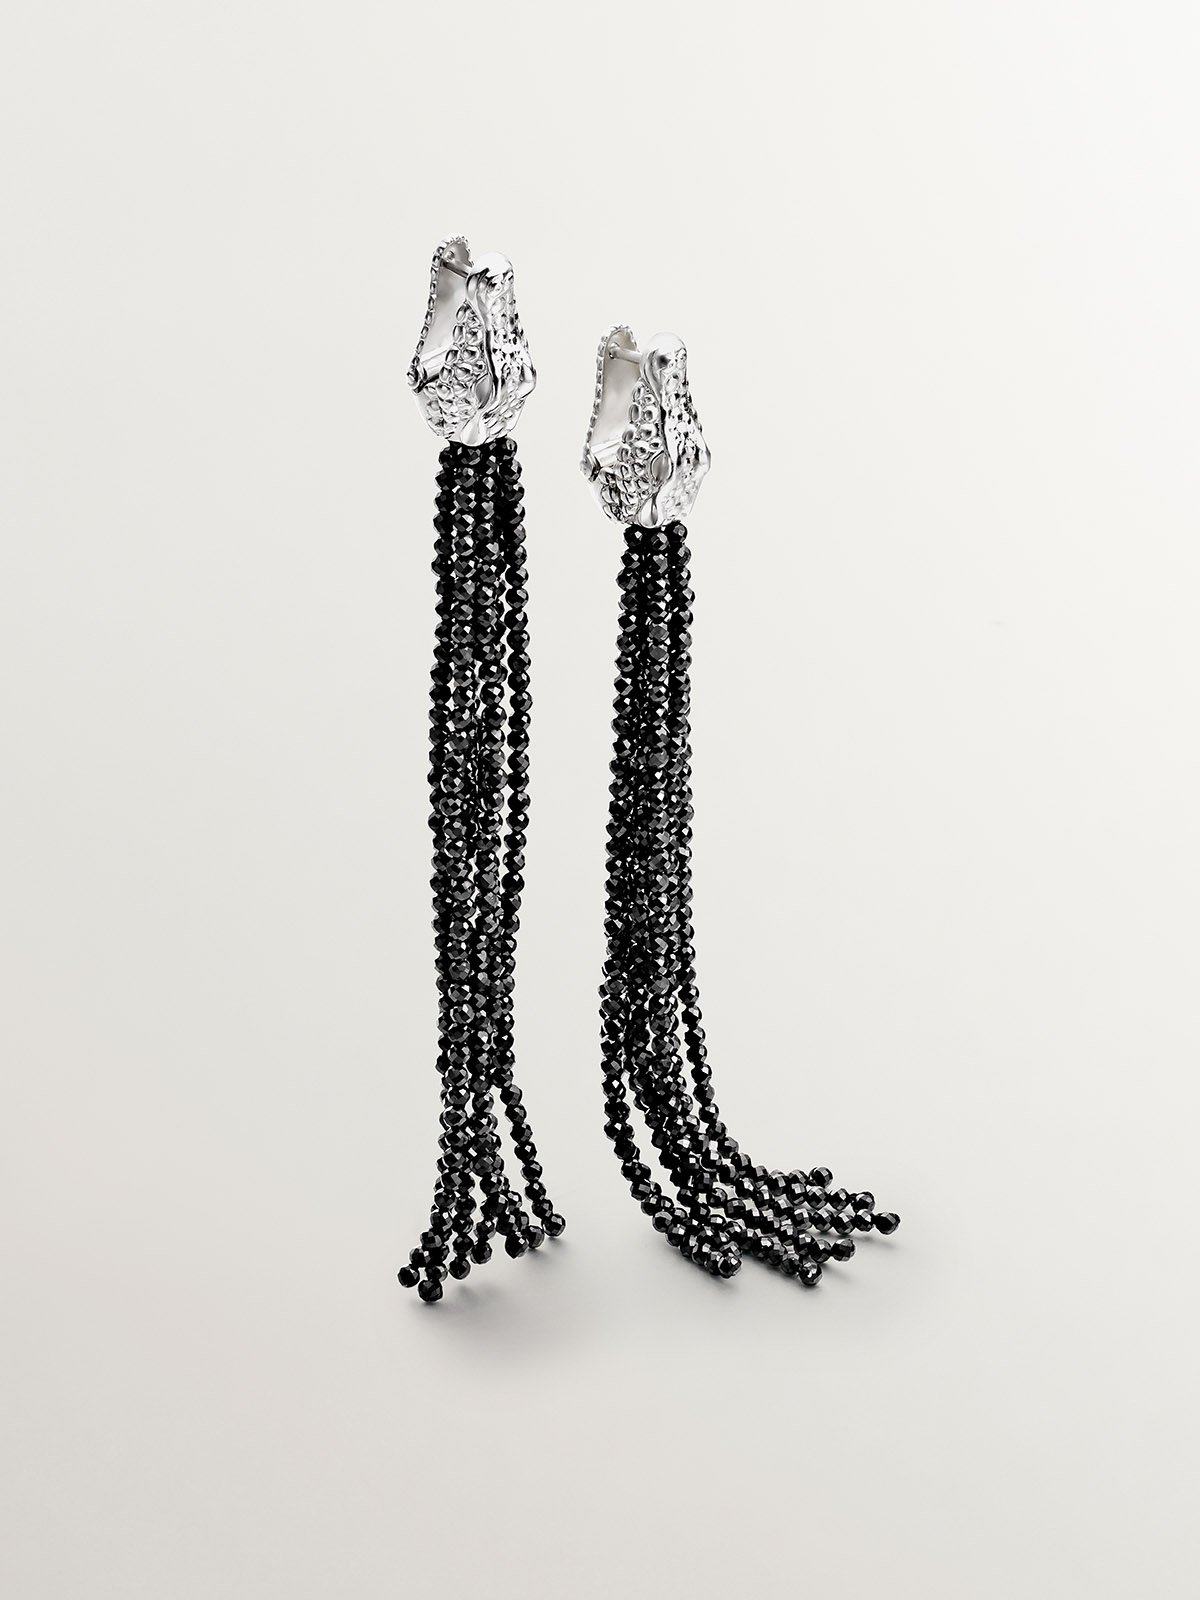 Pendientes largos de plata 925 con forma de cocodrilo y espinelas negras